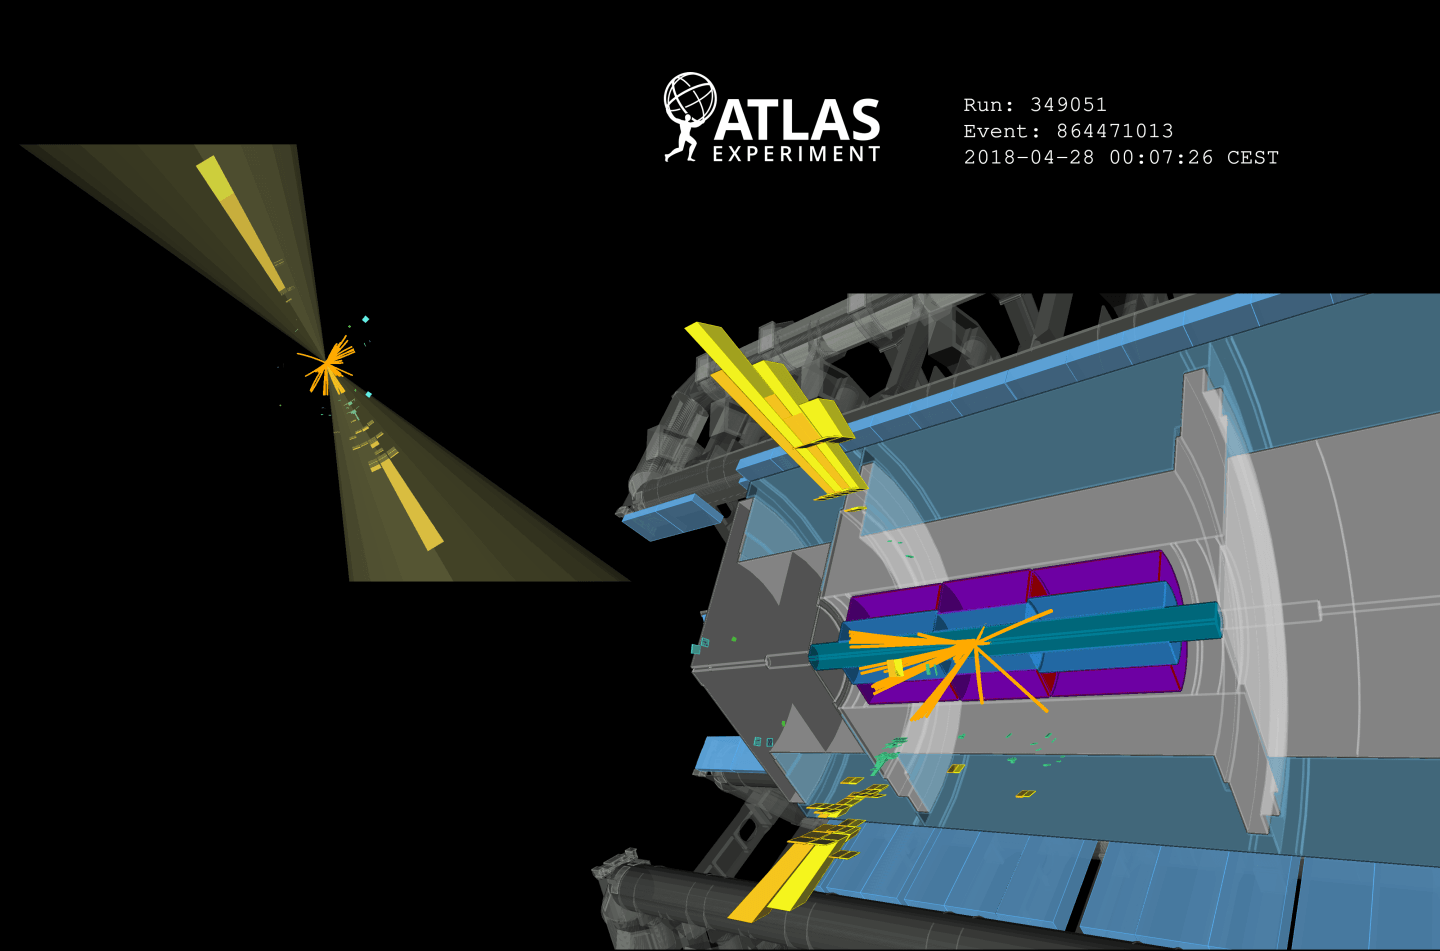 Detektor ATLAS wkrótce wykryje nowe cząstki elementarne?
